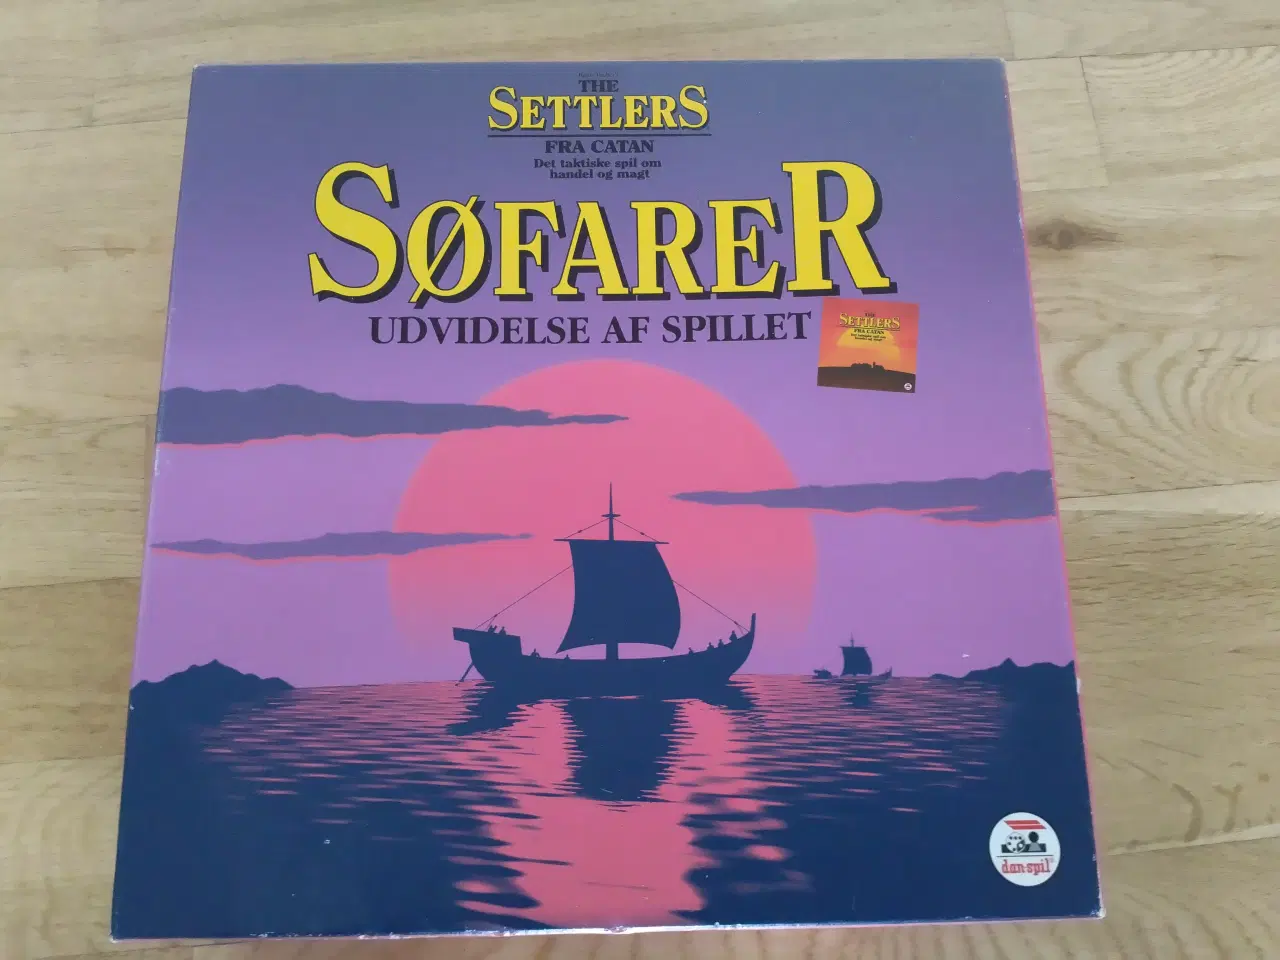 Billede 1 - Settlers udvidelse. Søfarer brætspil.